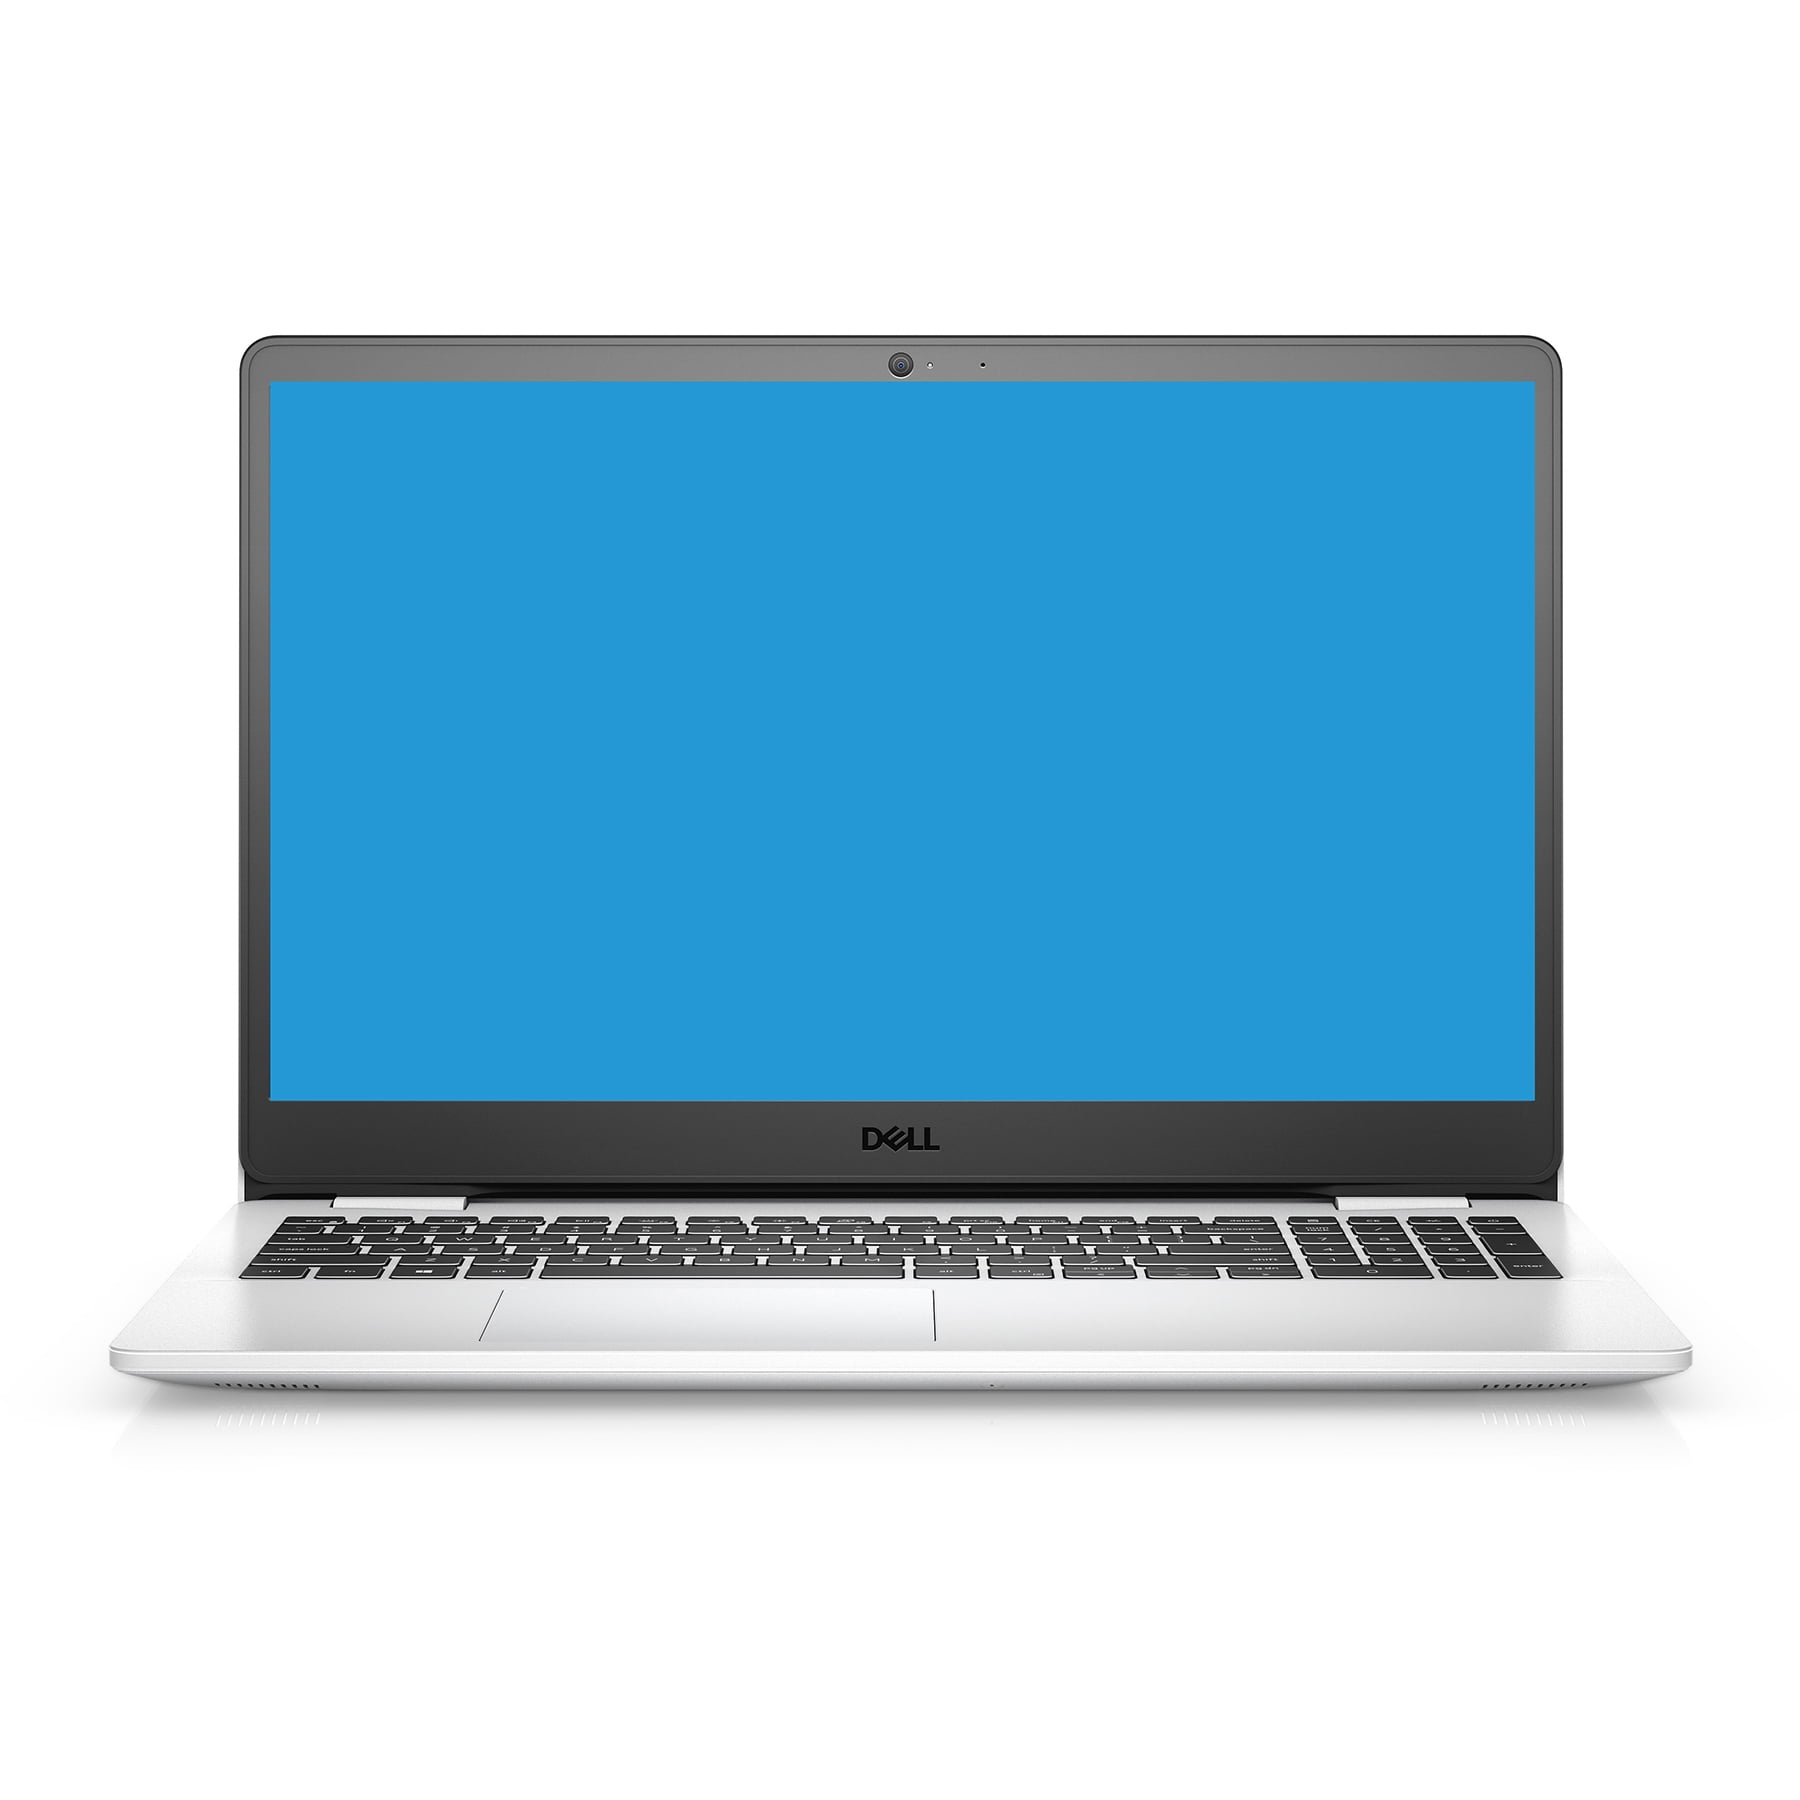 Dell Inspiron 15 3000 3505 Laptop Computer 15.6” FHD Narrow Border